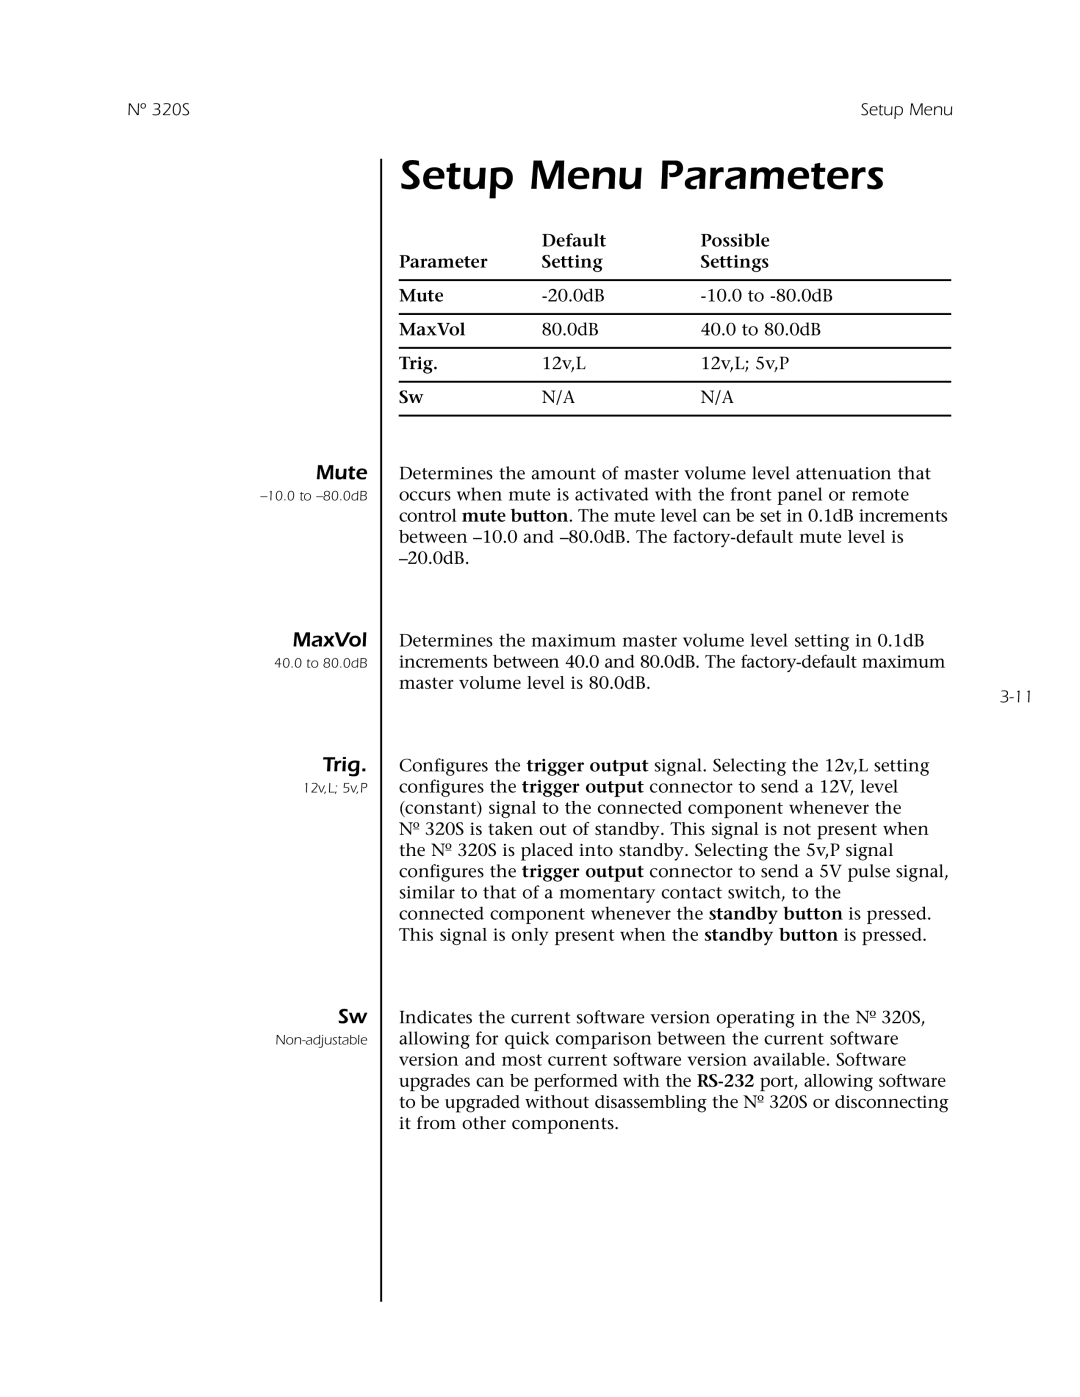 Mark Levinson N 320S owner manual Setup Menu Parameters, Mute, MaxVol, Trig, Default, Possible, Settings 